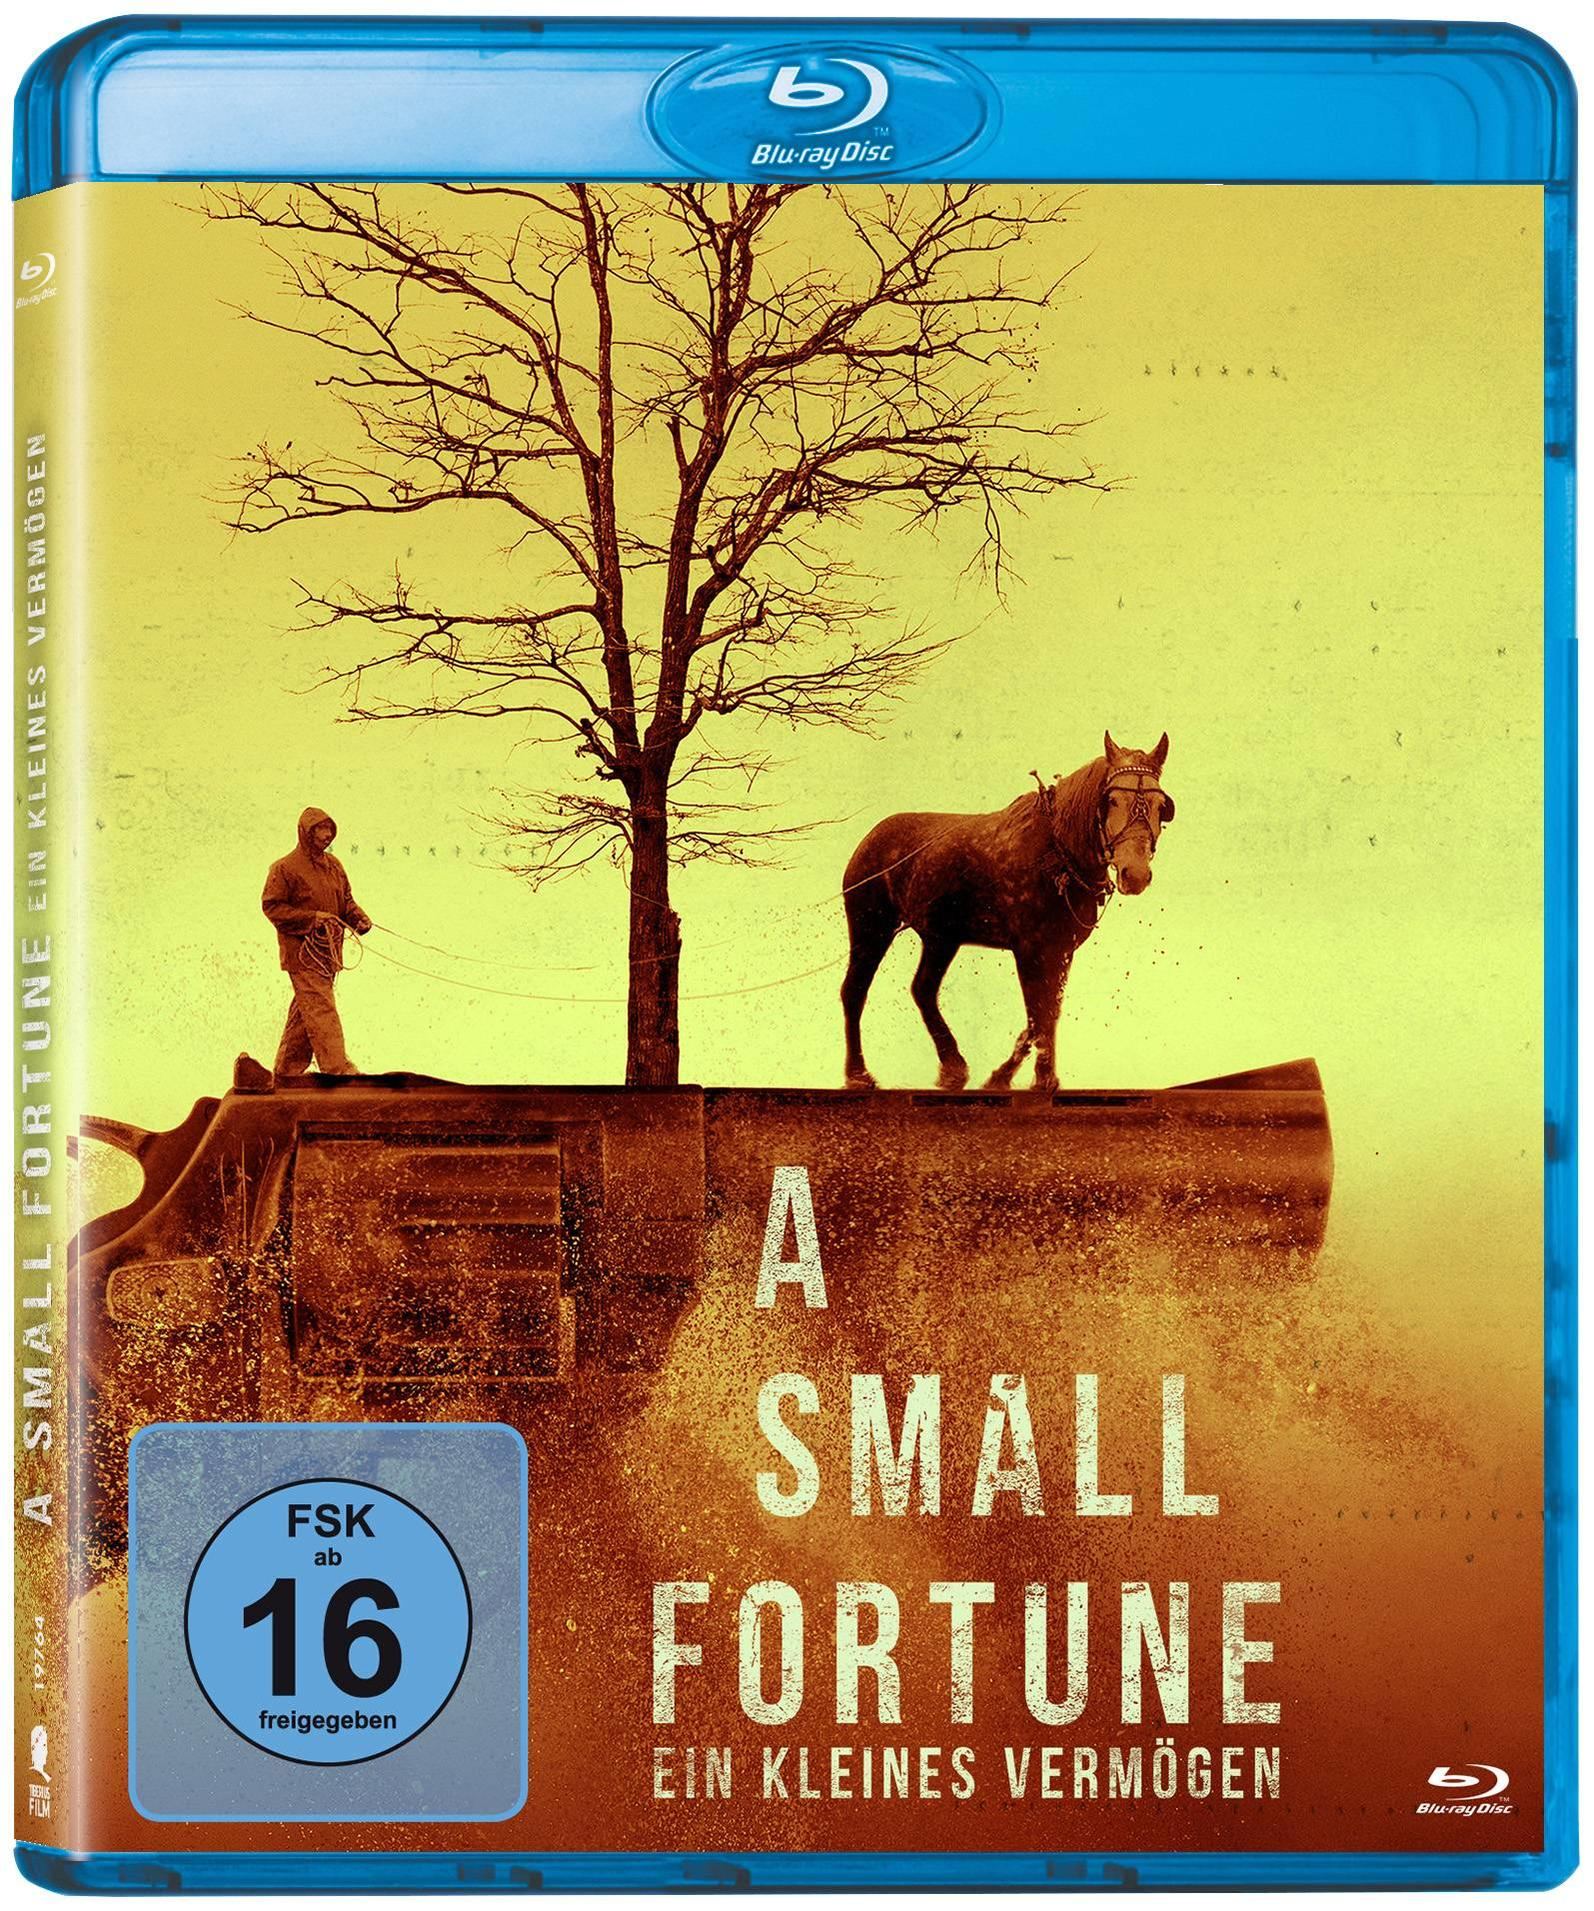 Kleines Small Vermögen Fortune-Ein A Blu-ray